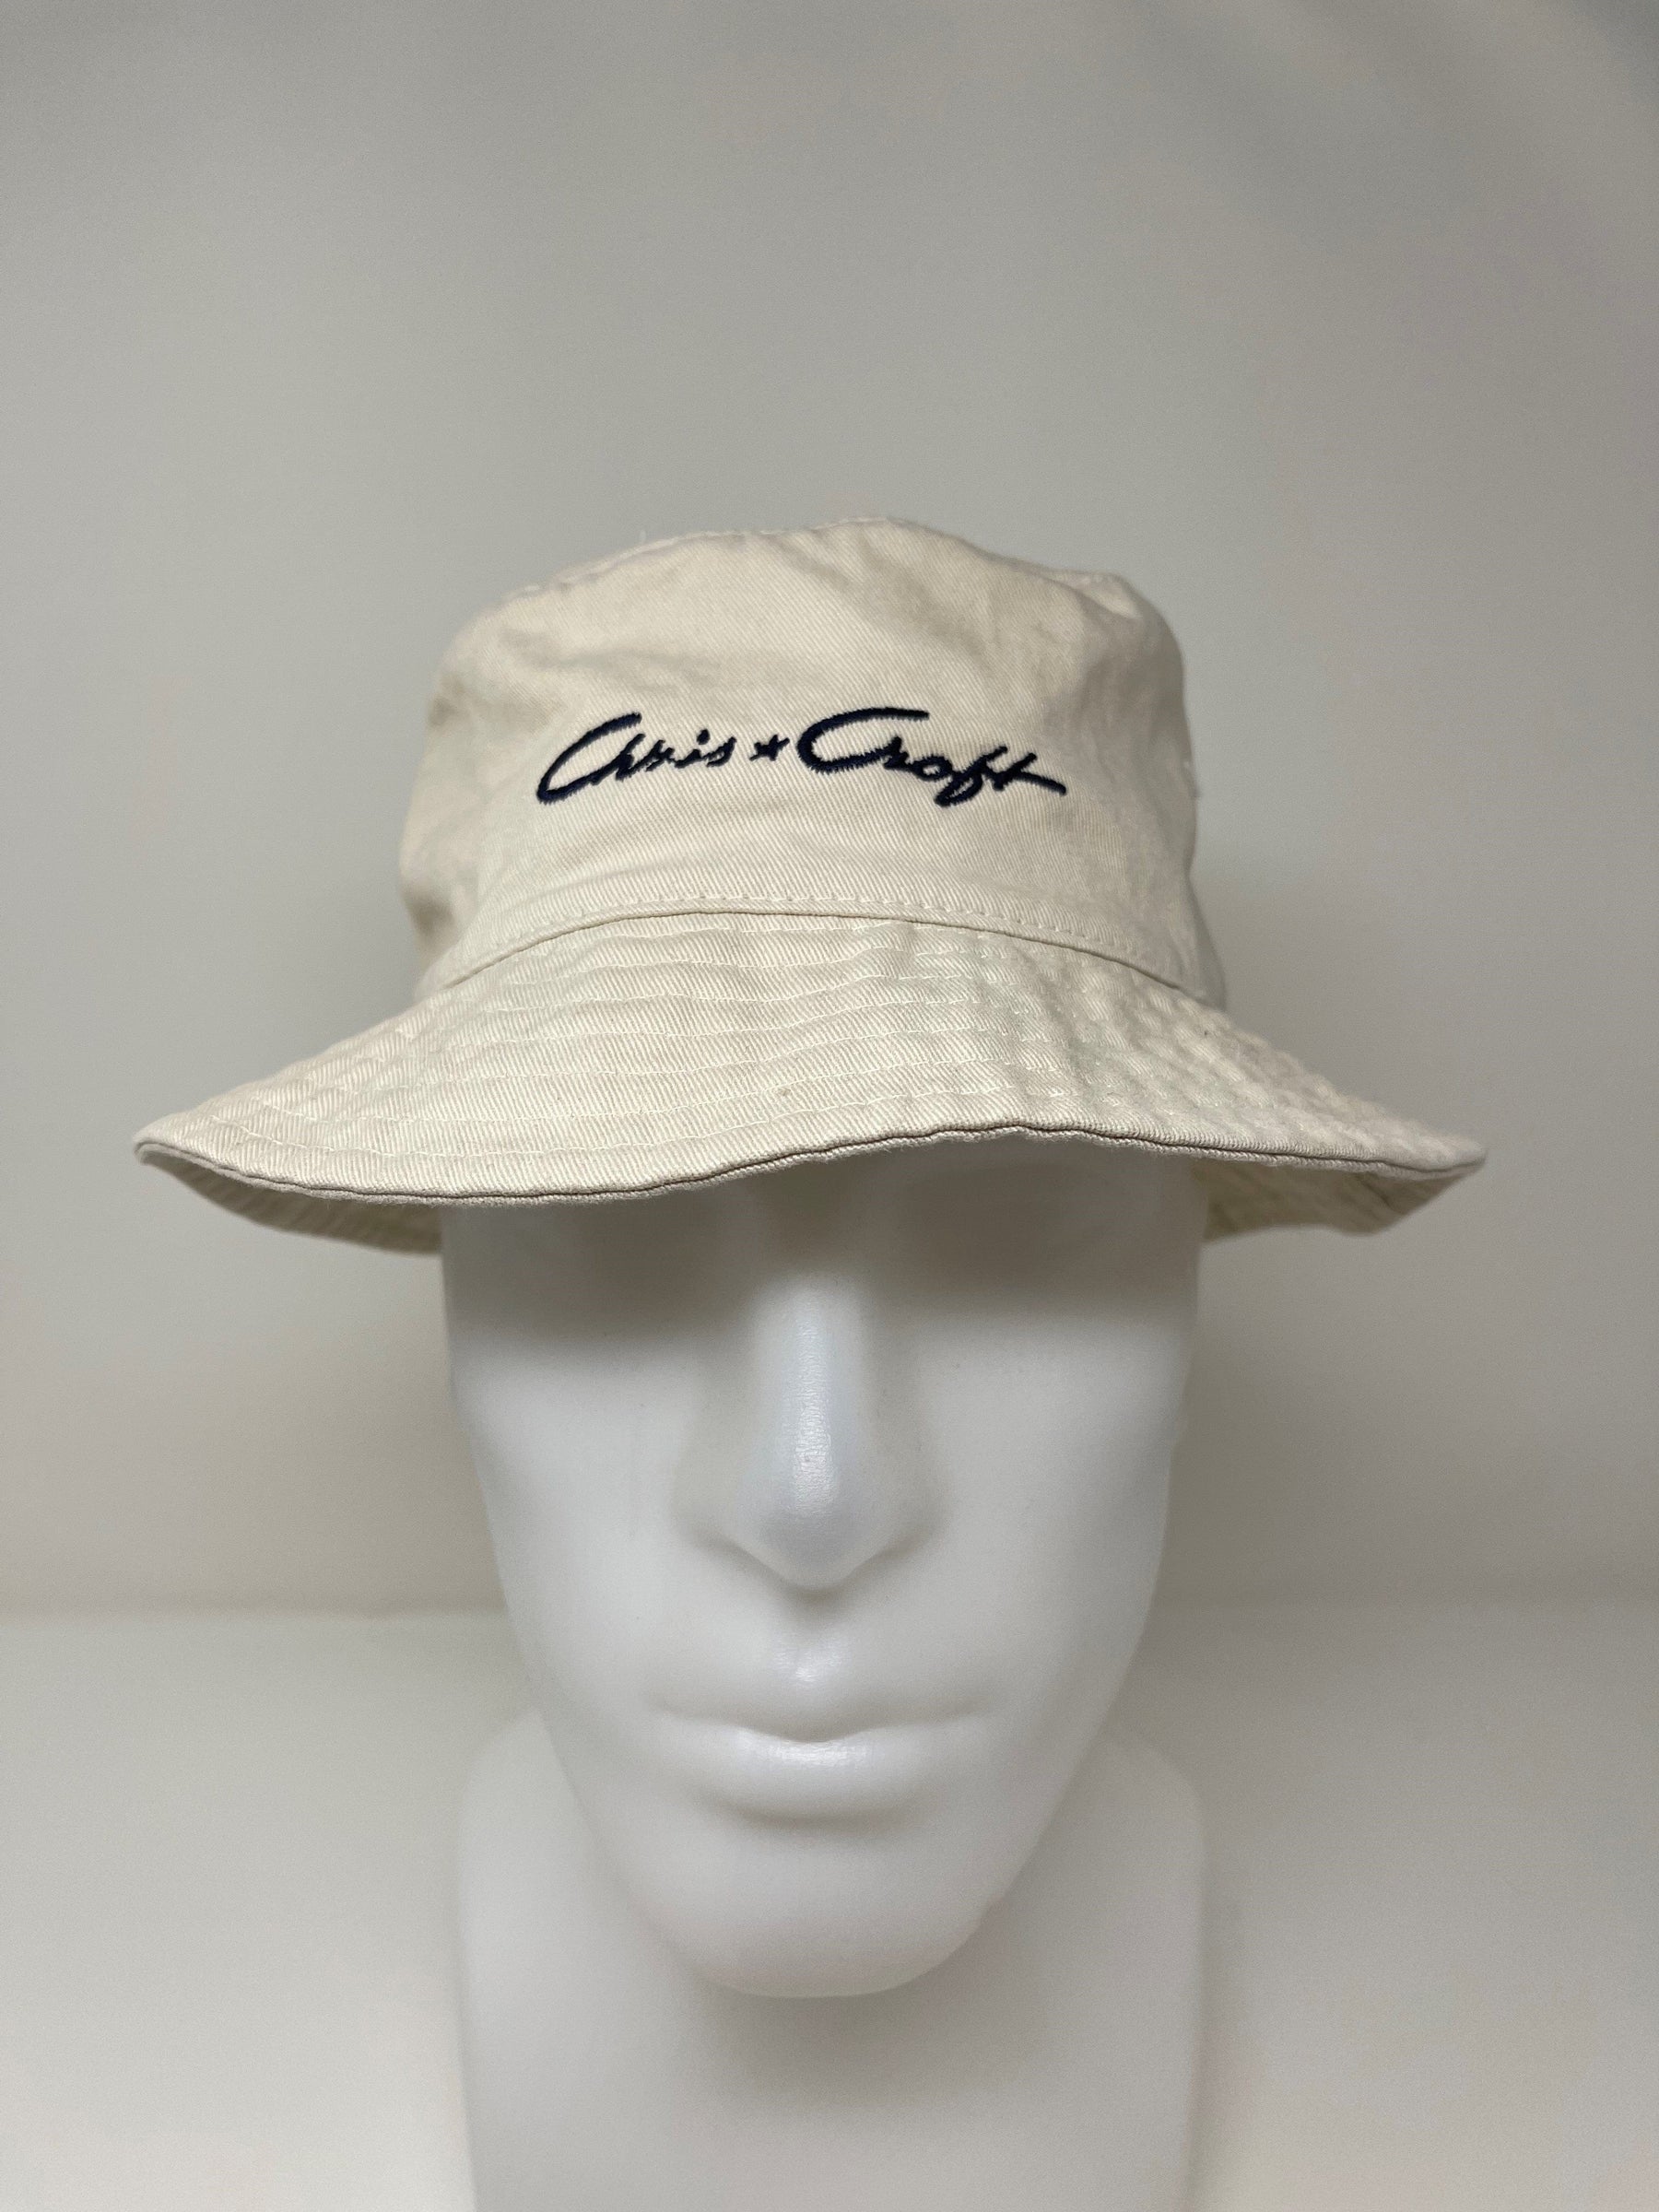 Chris-Craft - Unisex Wide Brim Bucket Hat - Beige with Blue Post-War Script